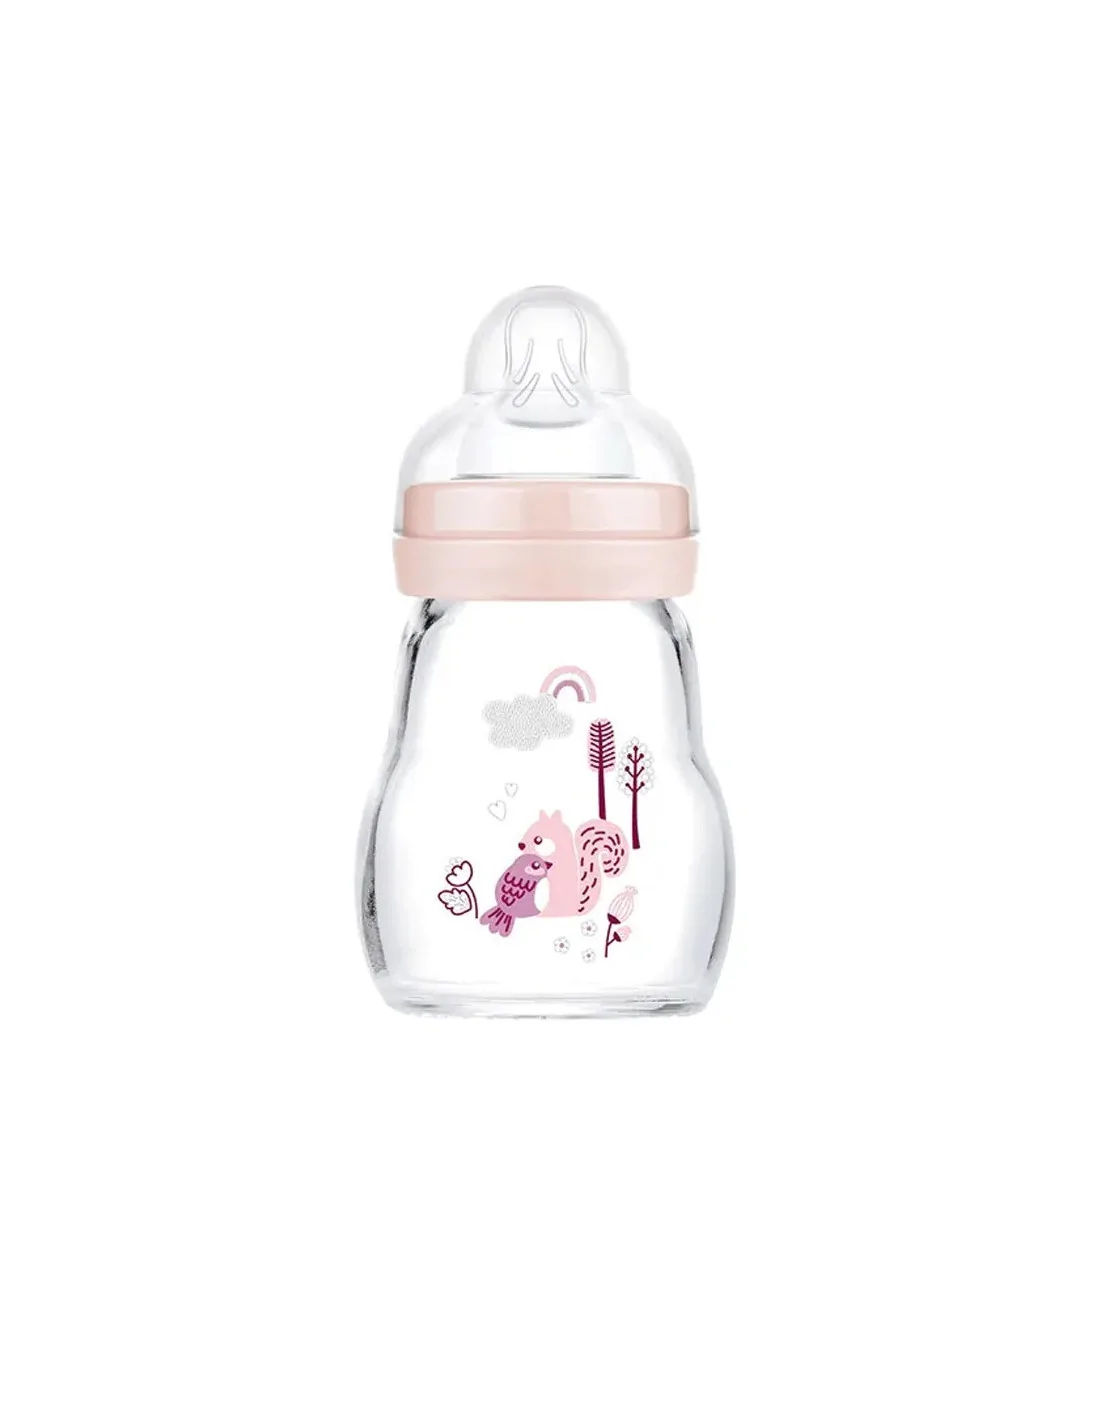 MAM Baby - La boite doseuse de lait en poudre est particulièrement légere  et peut contenir jusqu'à 3 doses de lait en poudre. Grâce à sa forme  triangulaire innovante, le lait en